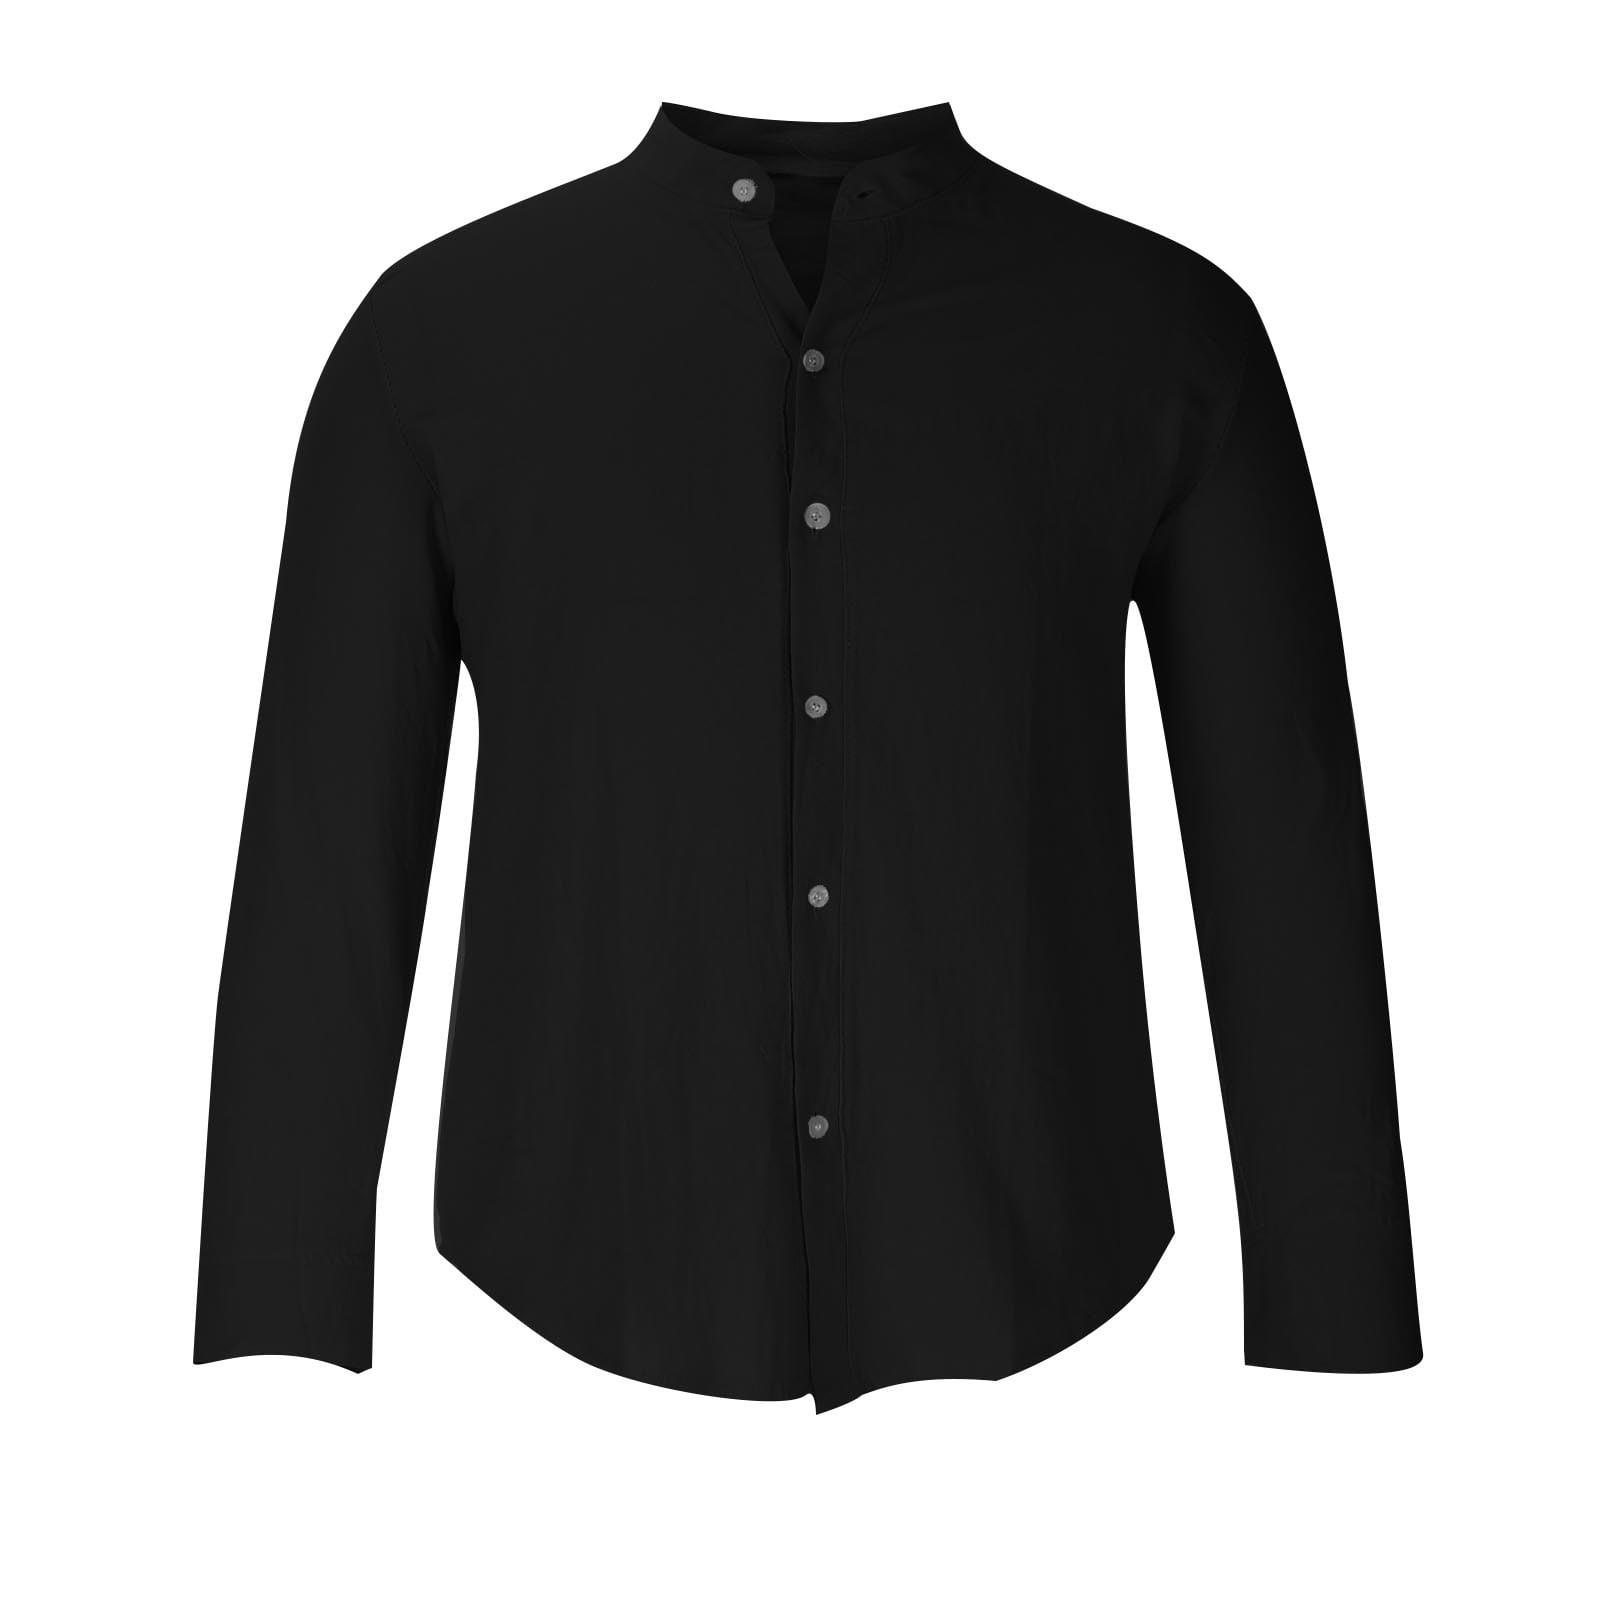 Black Stand-up Collar Cotton Dress Shirt